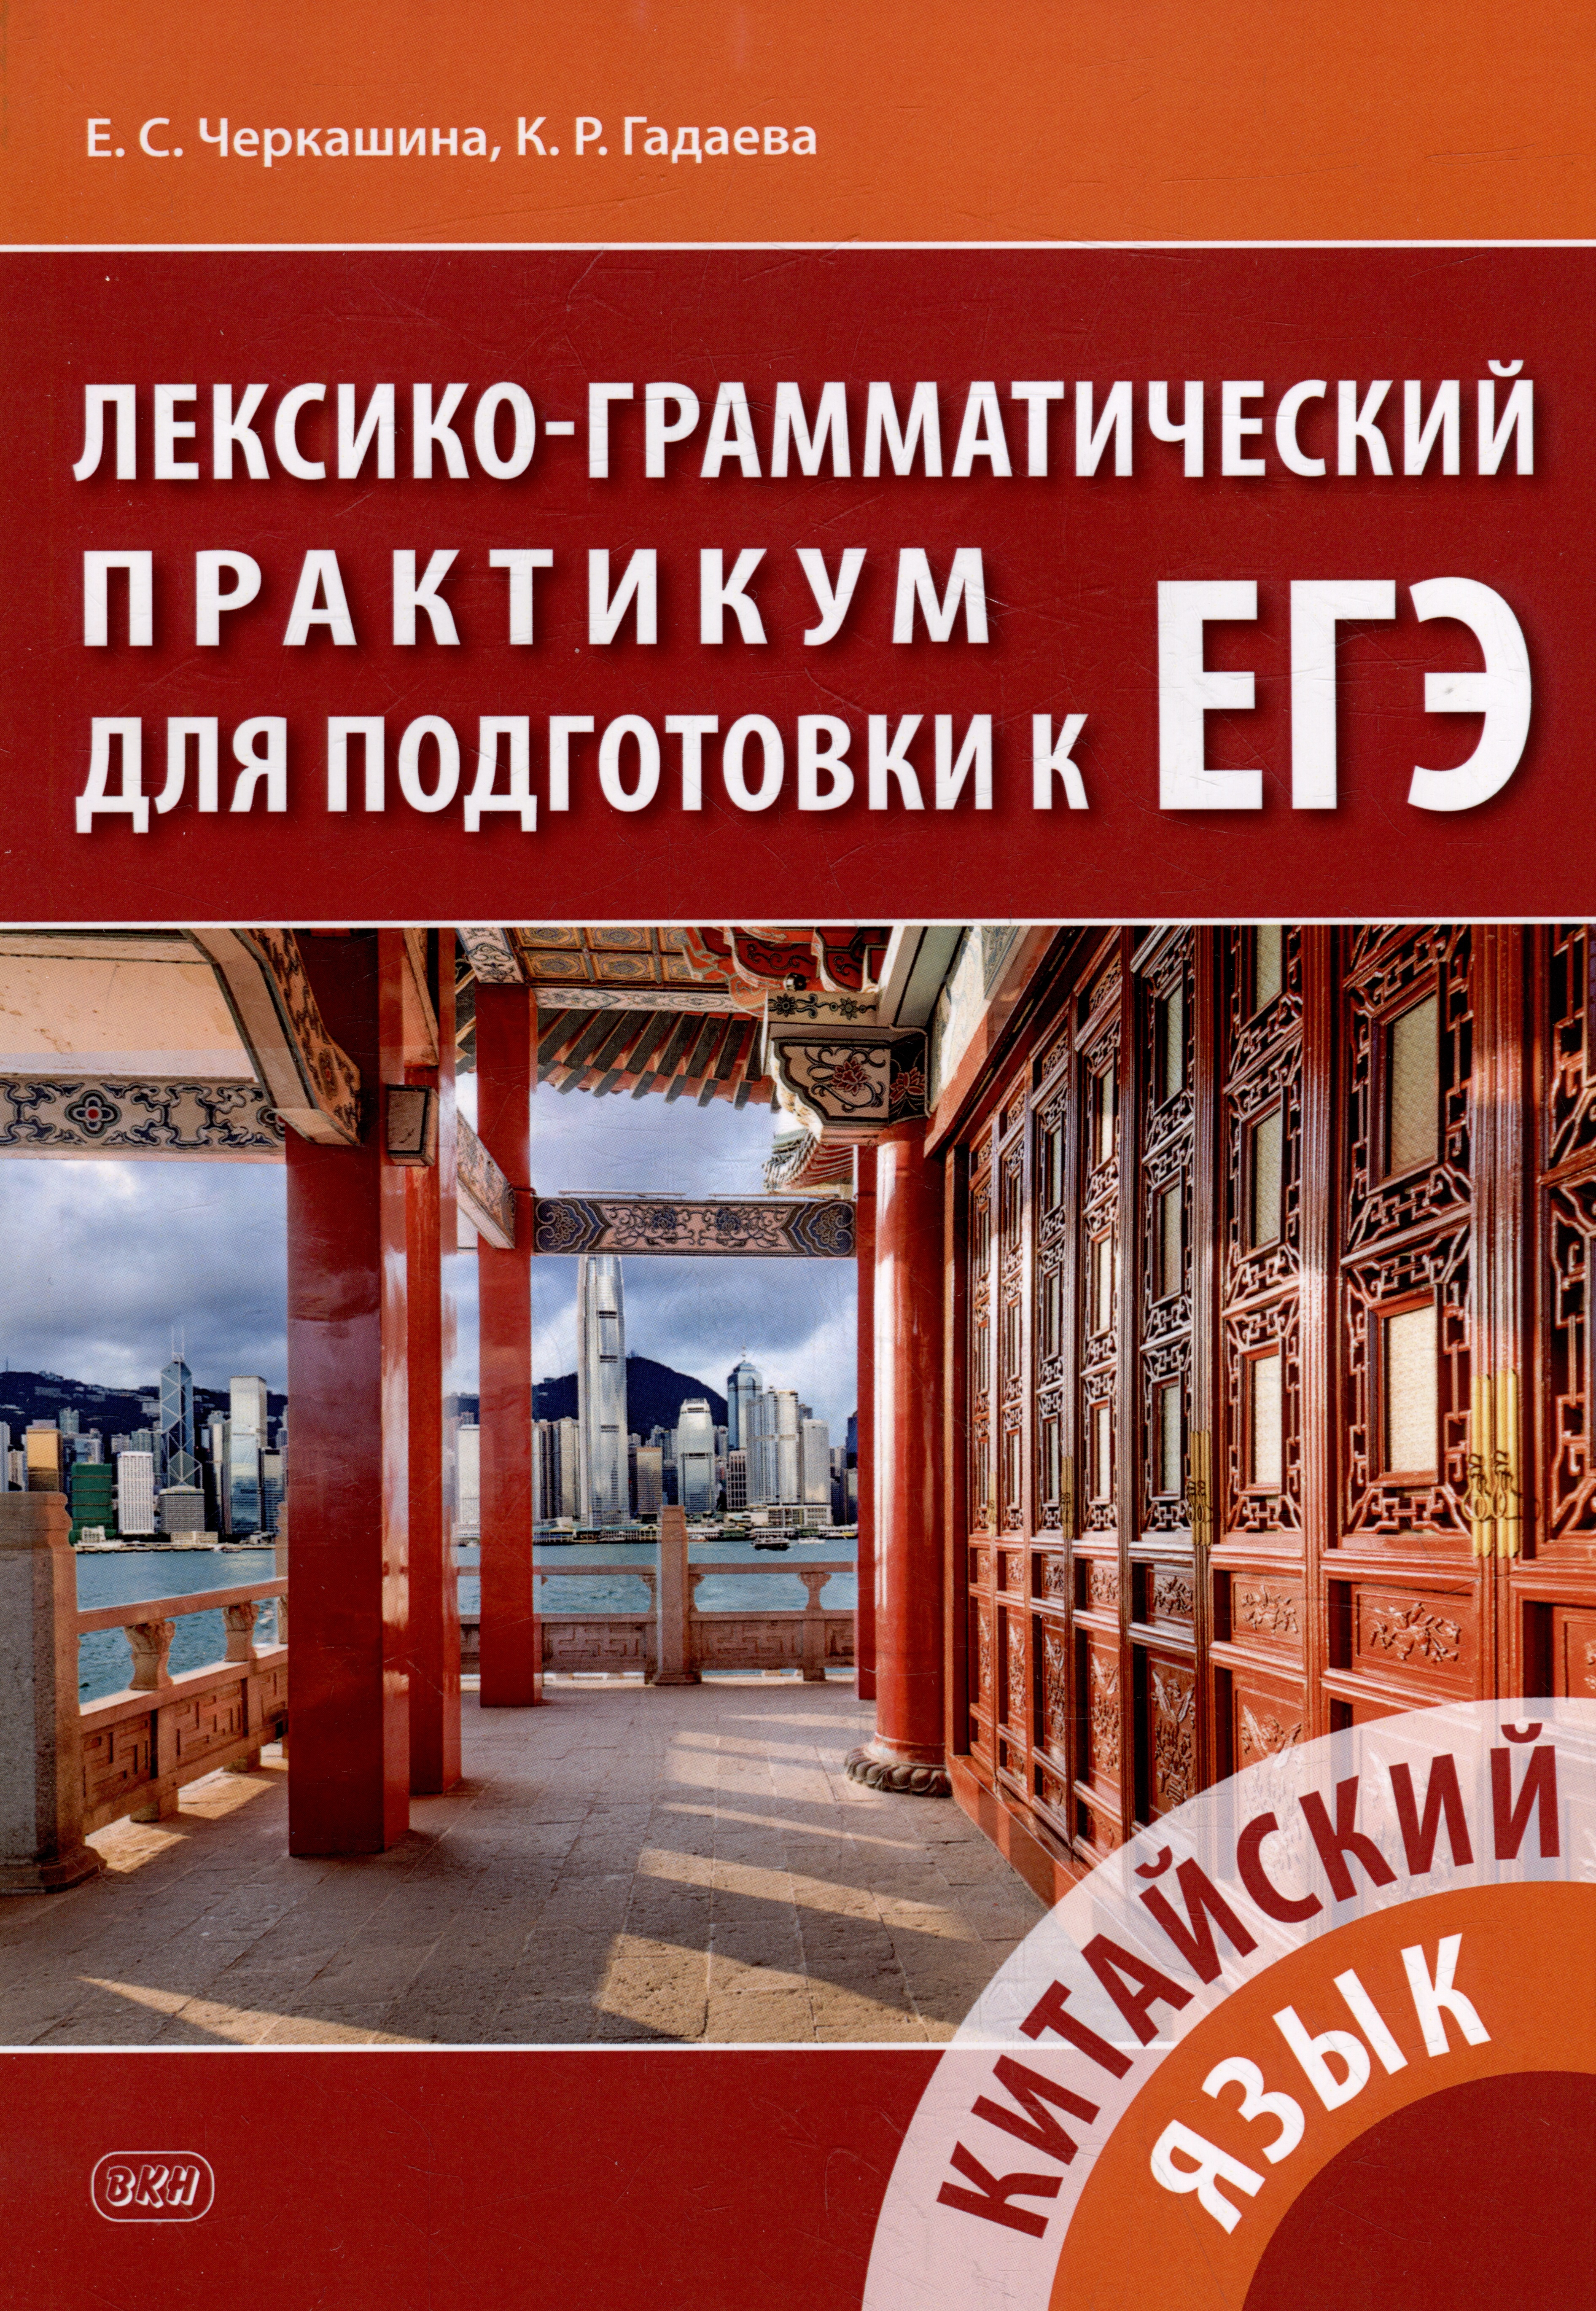 Китайский язык. Лексико-грамматический практикум для подготовки к ЕГЭ: учебное пособие